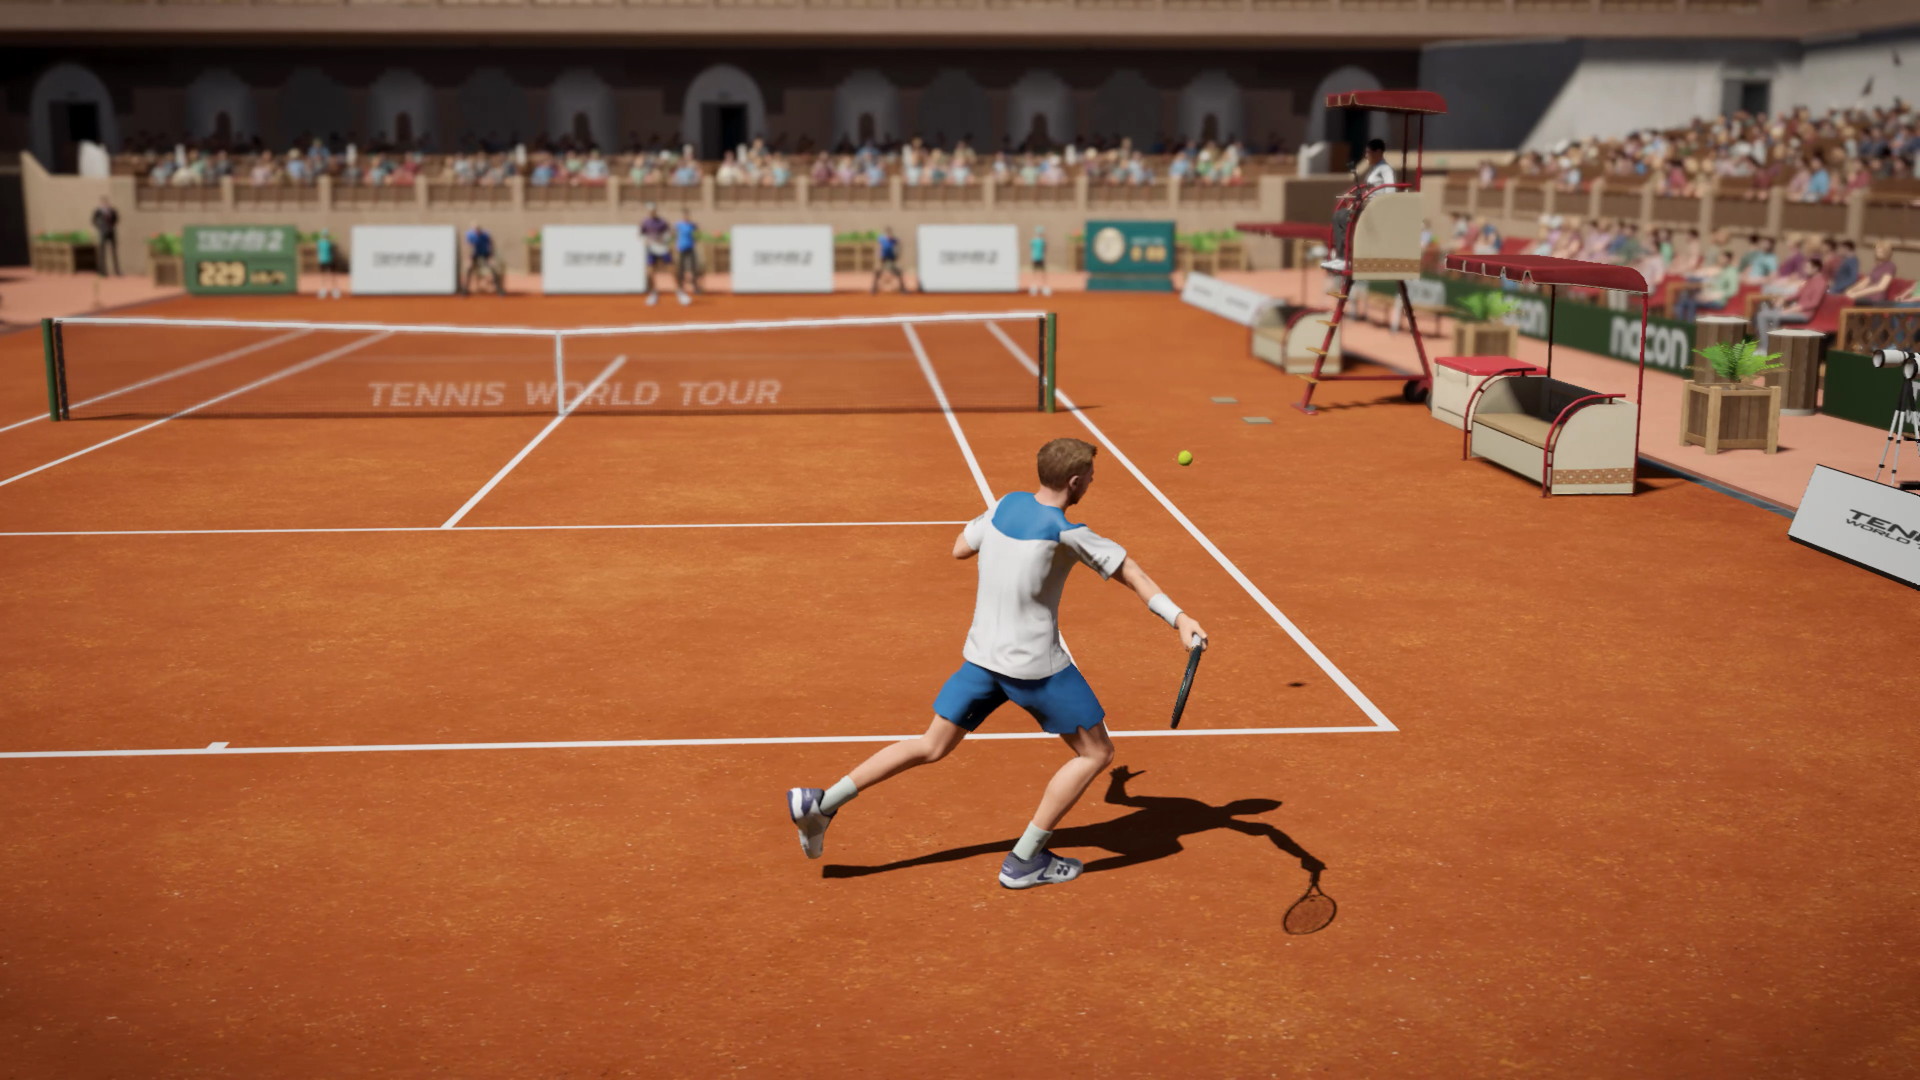 Tennis World Tour 2 - screenshot 6